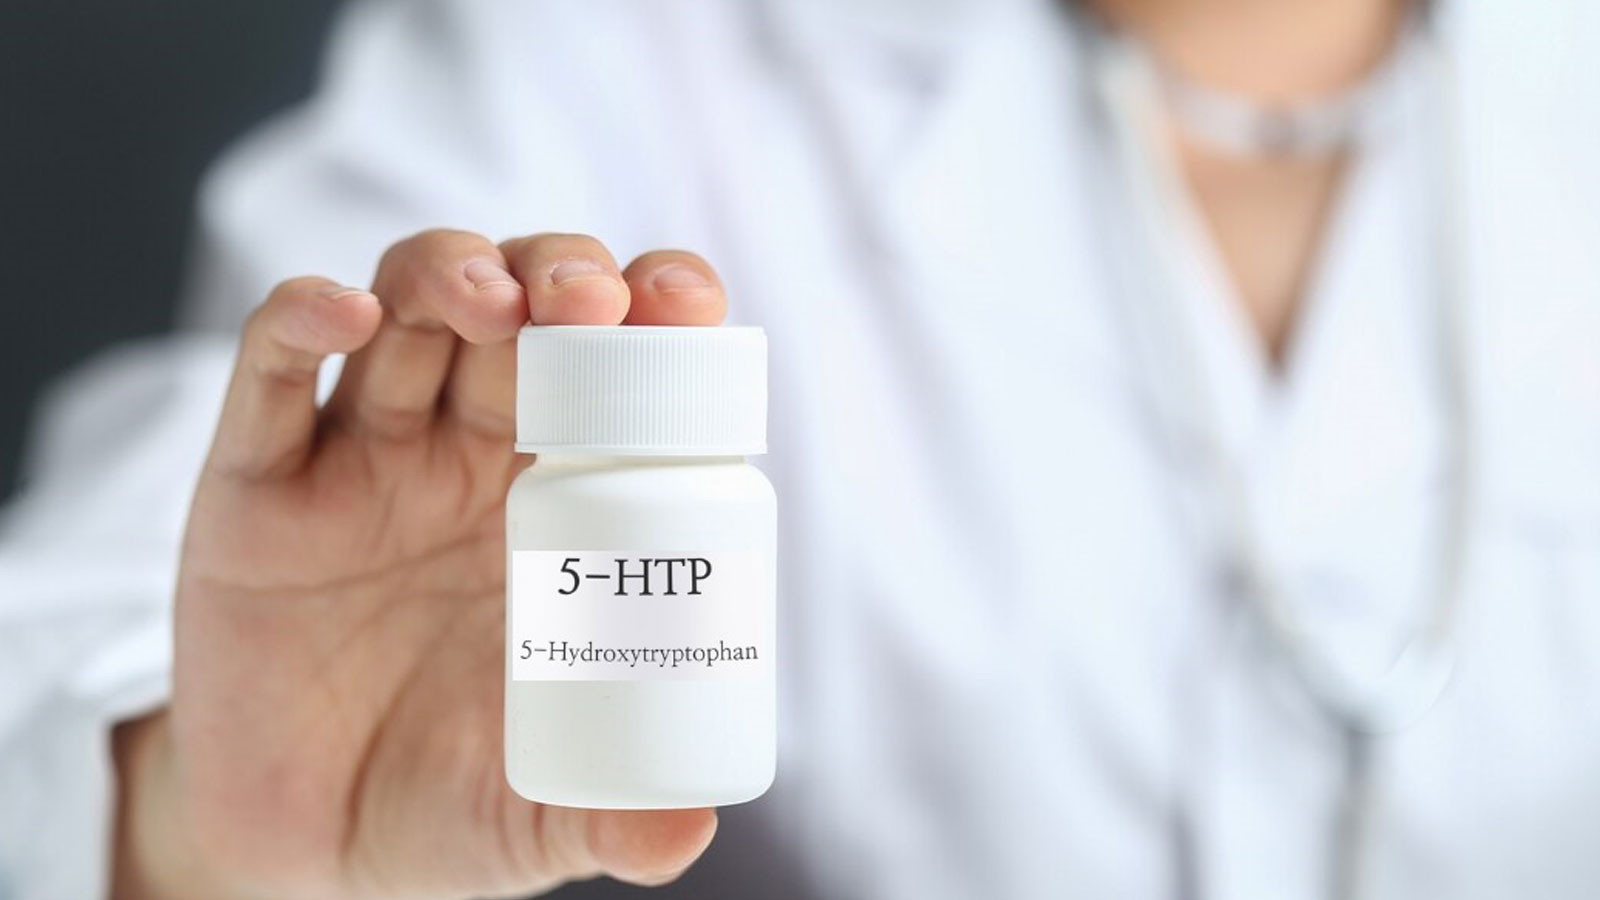 Yapılan araştırmalarda 5-HTP'nin bazı antidepresanlar kadar etkili olduğu görüldü.